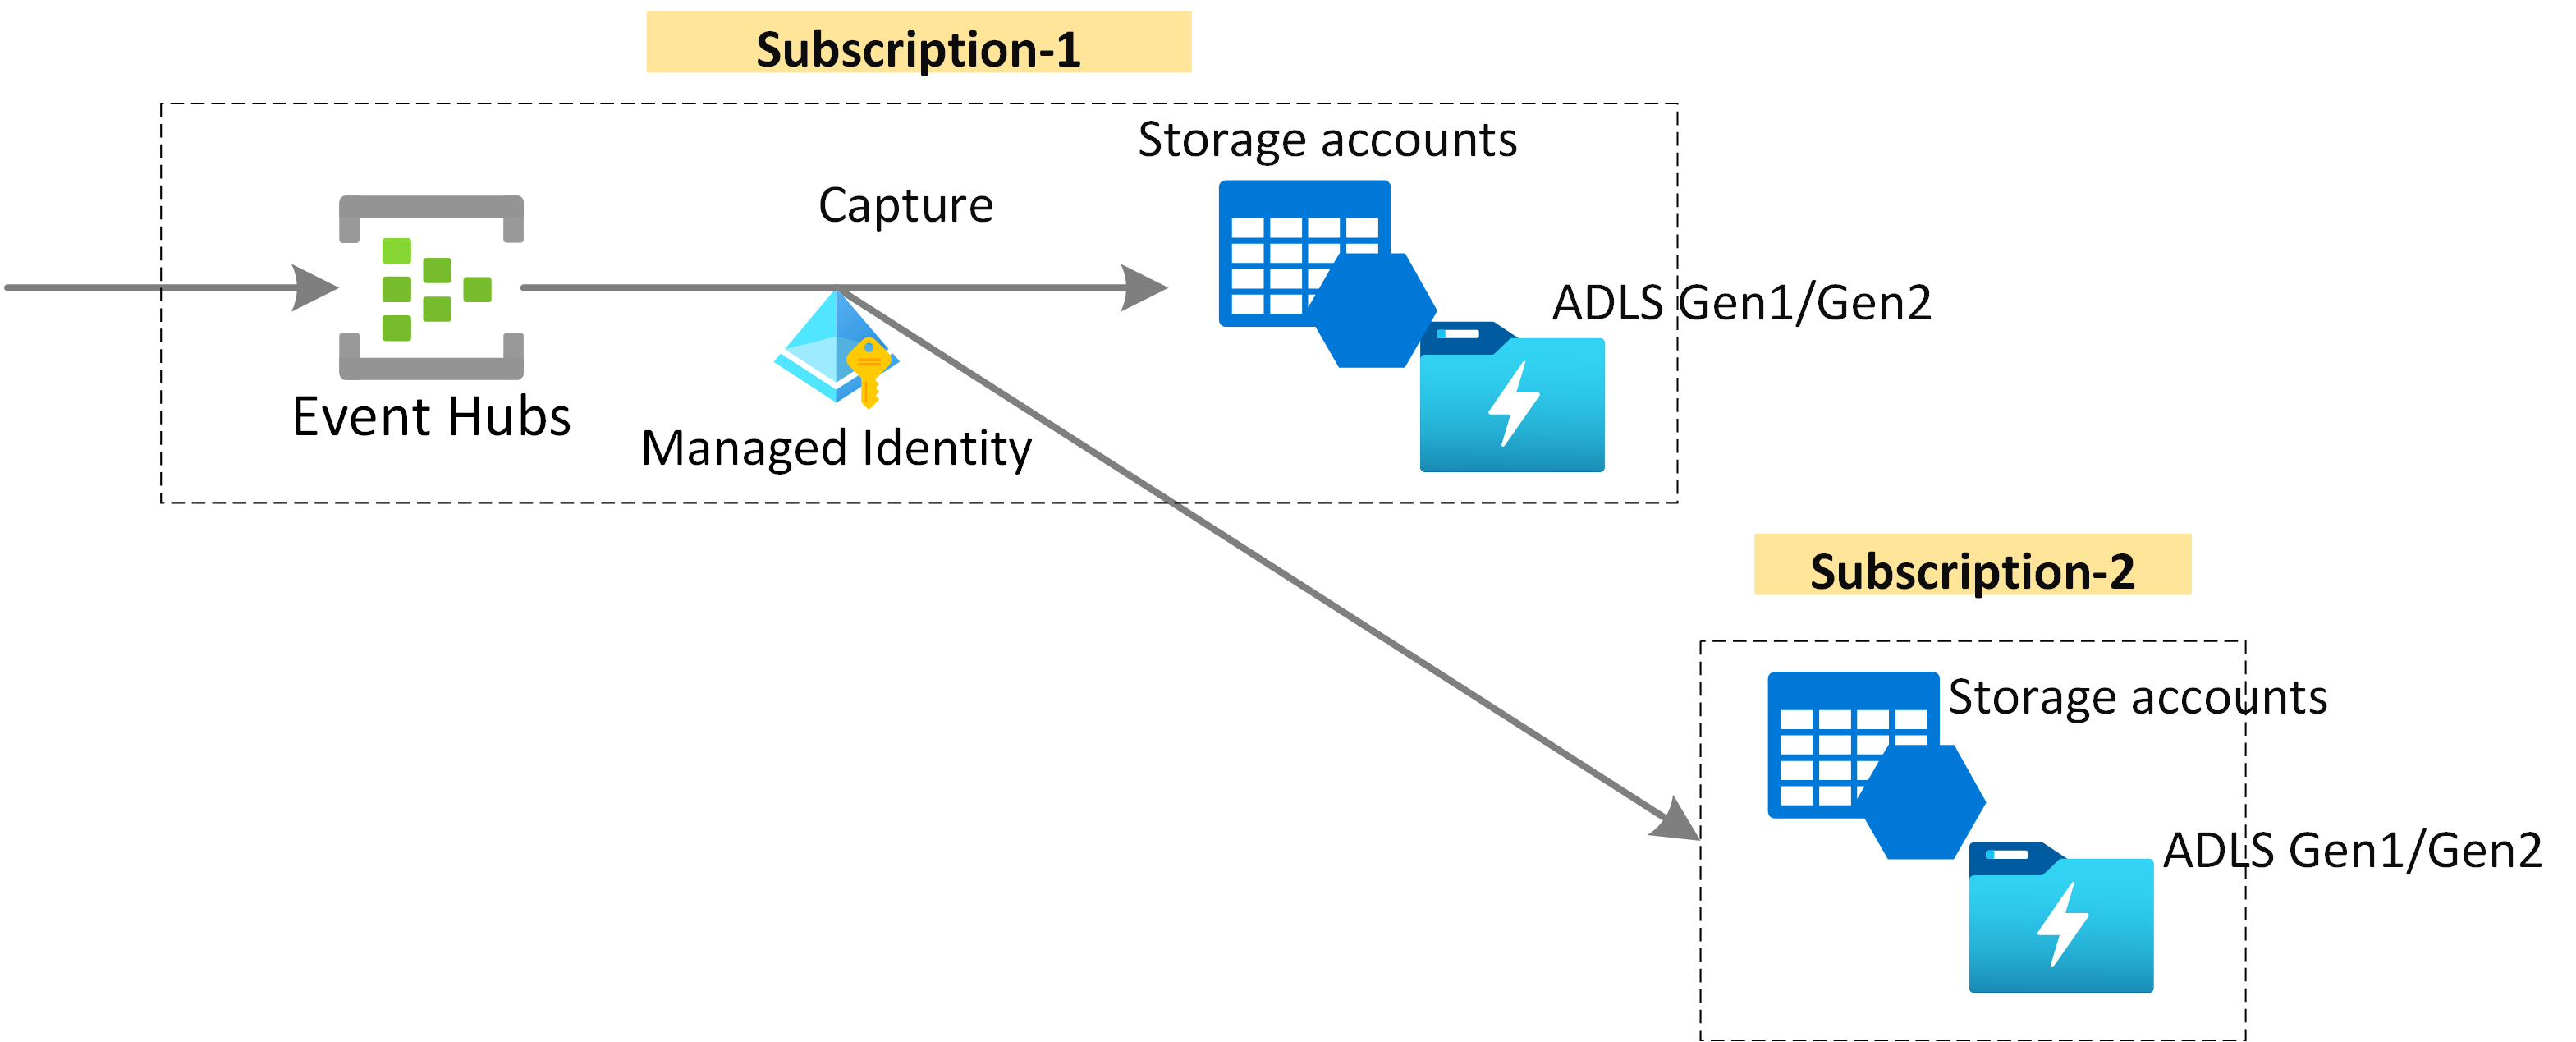 Imagem mostrando a captura de dados de Hubs de Eventos no Armazenamento do Azure ou no Armazenamento do Azure Data Lake usando a Identidade Gerenciada